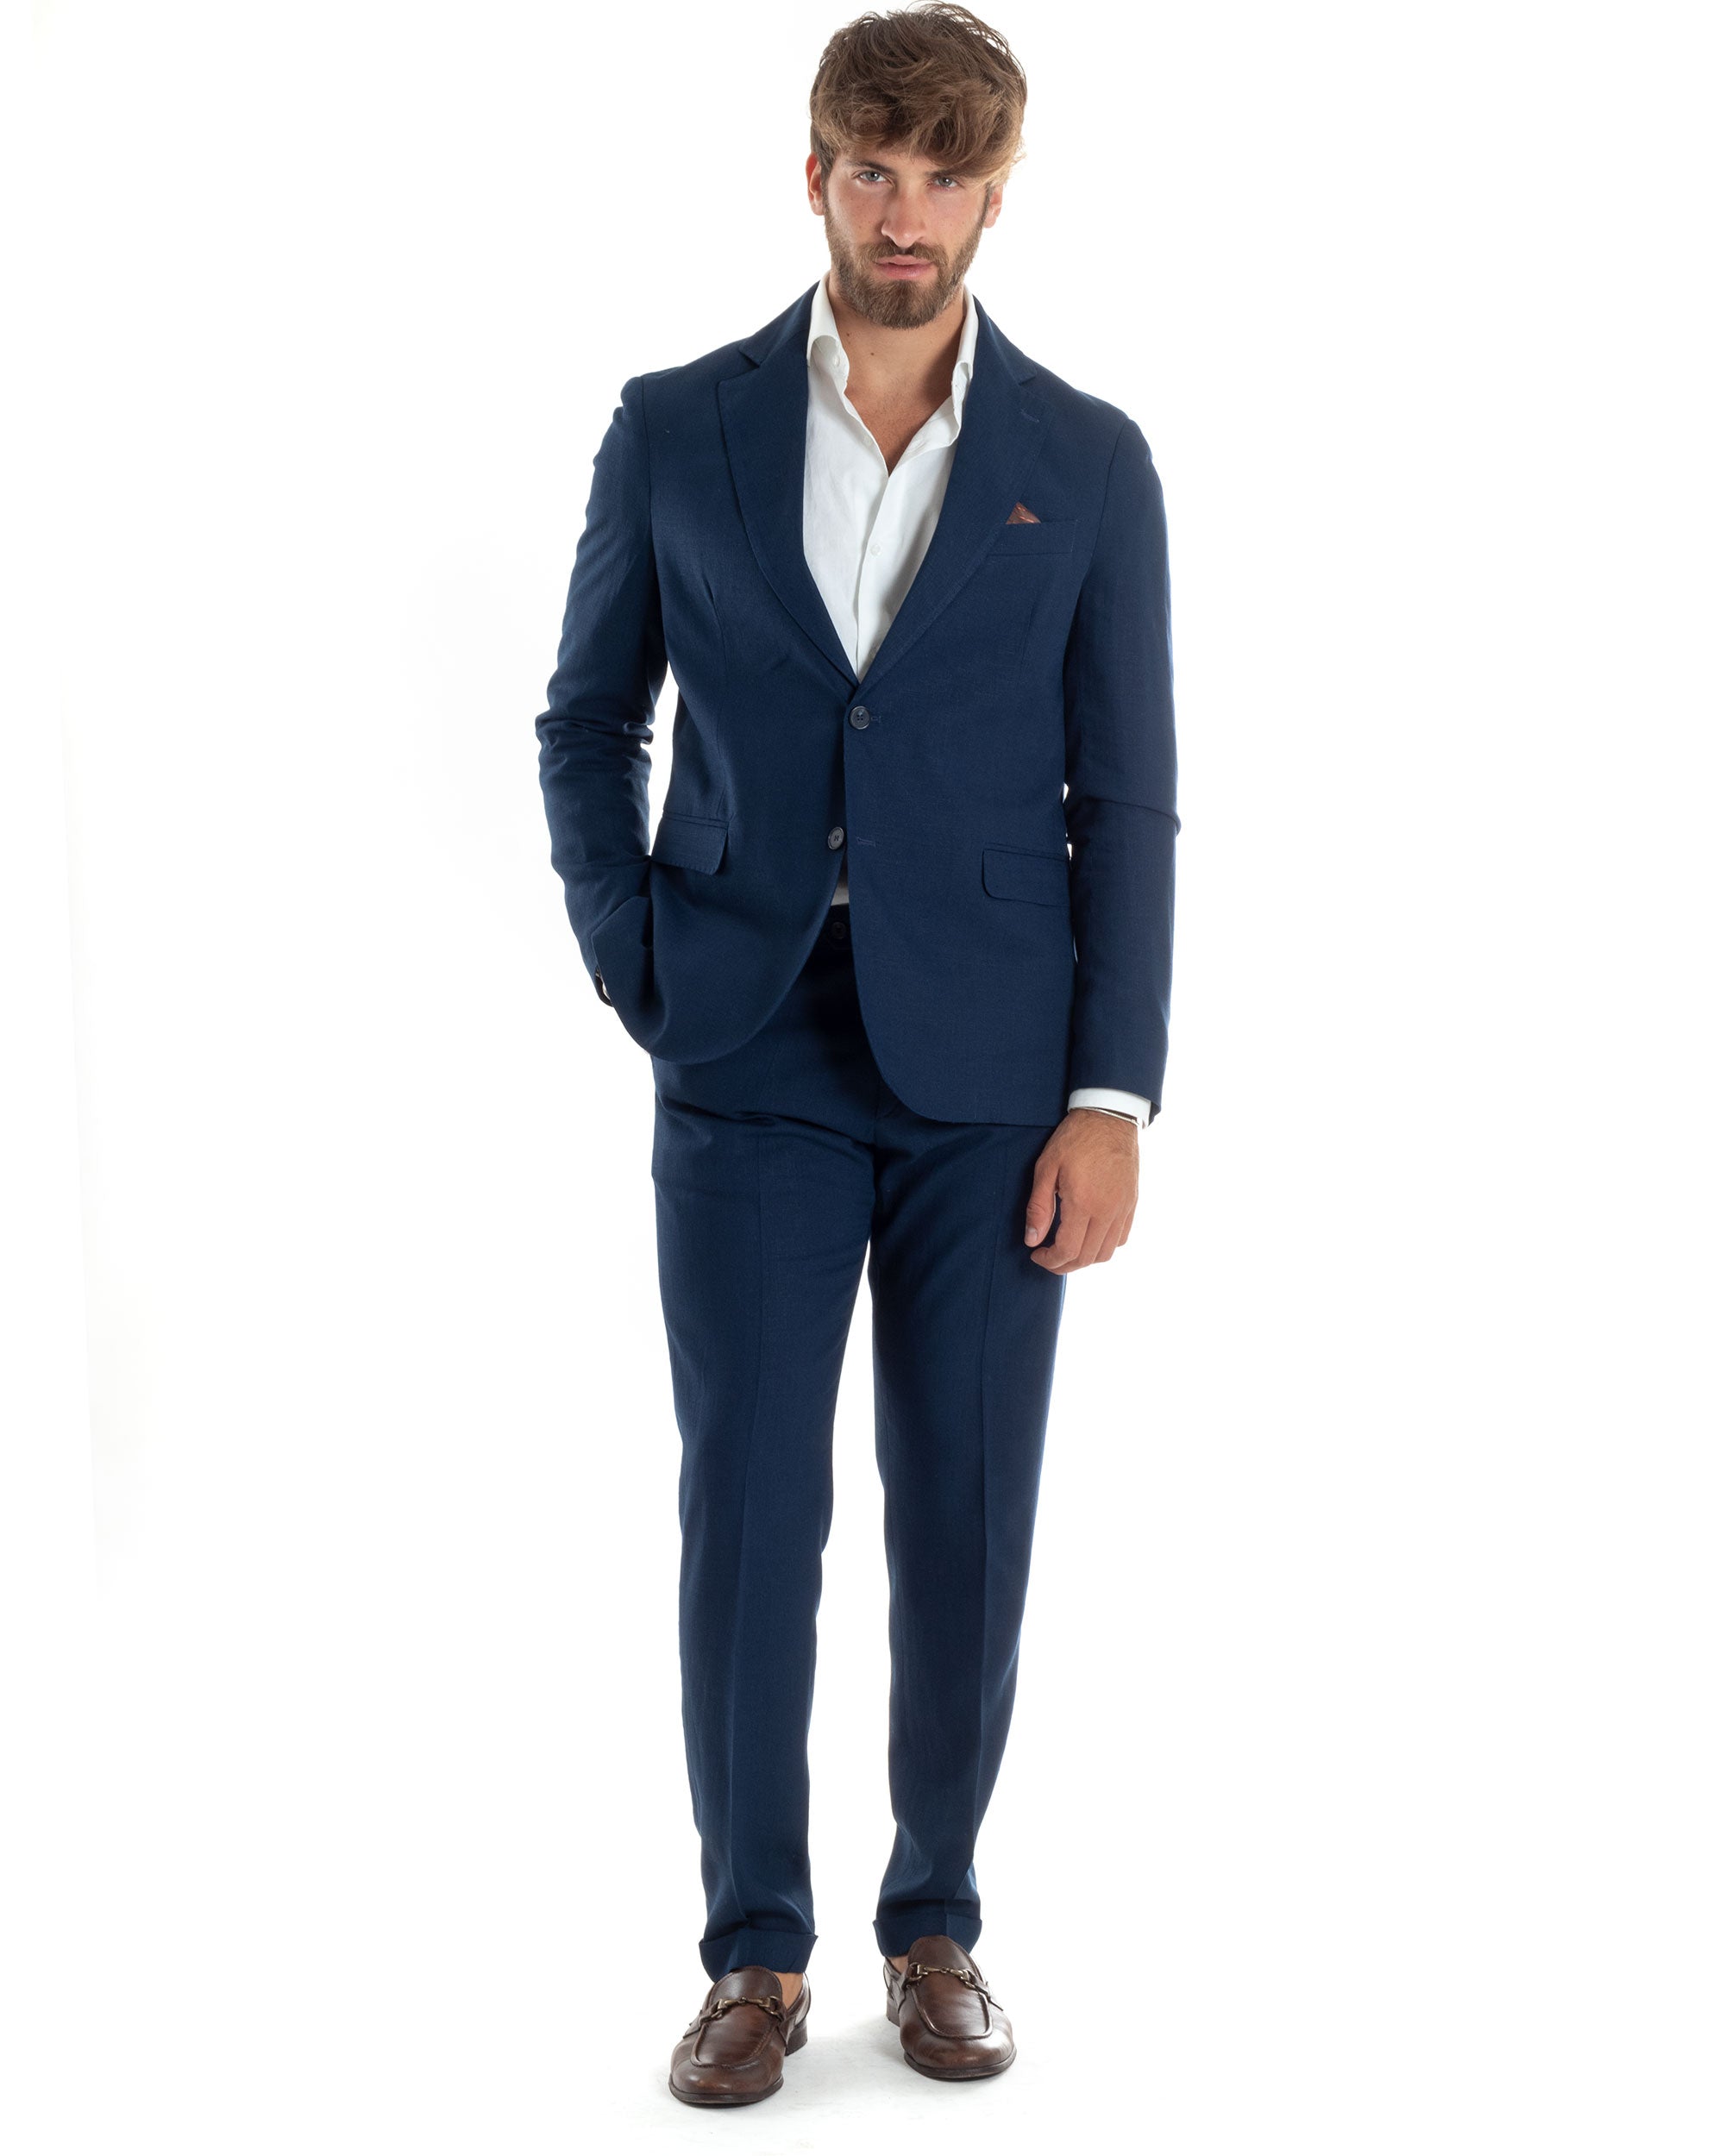 Abito Uomo Completo Lino Vestito Monopetto Sartoriale Giacca Pantaloni Casual Elegante Tinta Unita Blu GIOSAL-AE1075A